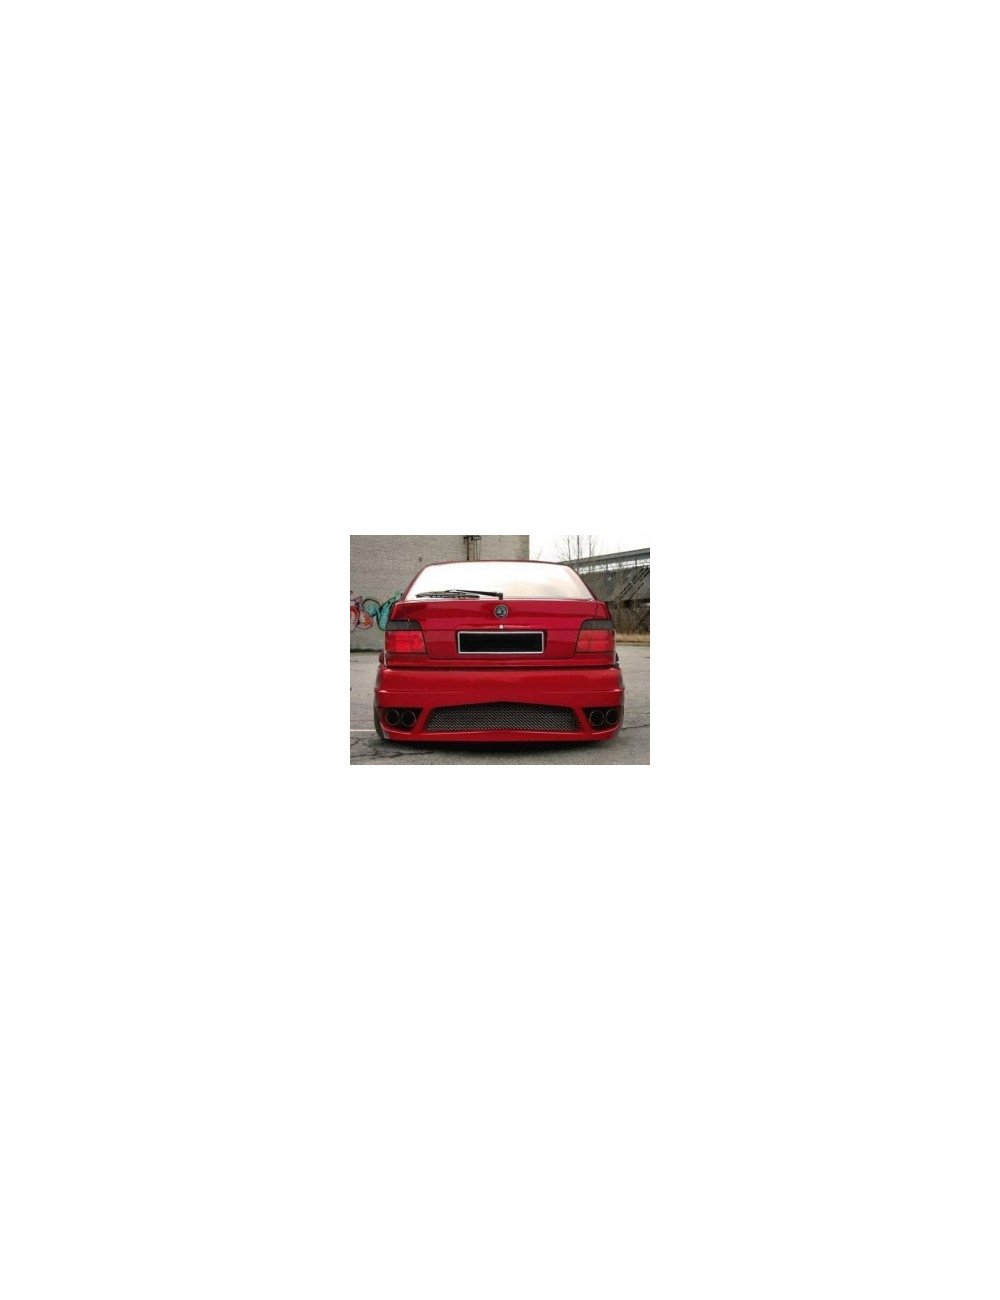 PARAURTI POSTERIORE IN VETRORESINA BMW SERIE 3 E36 COMPACT